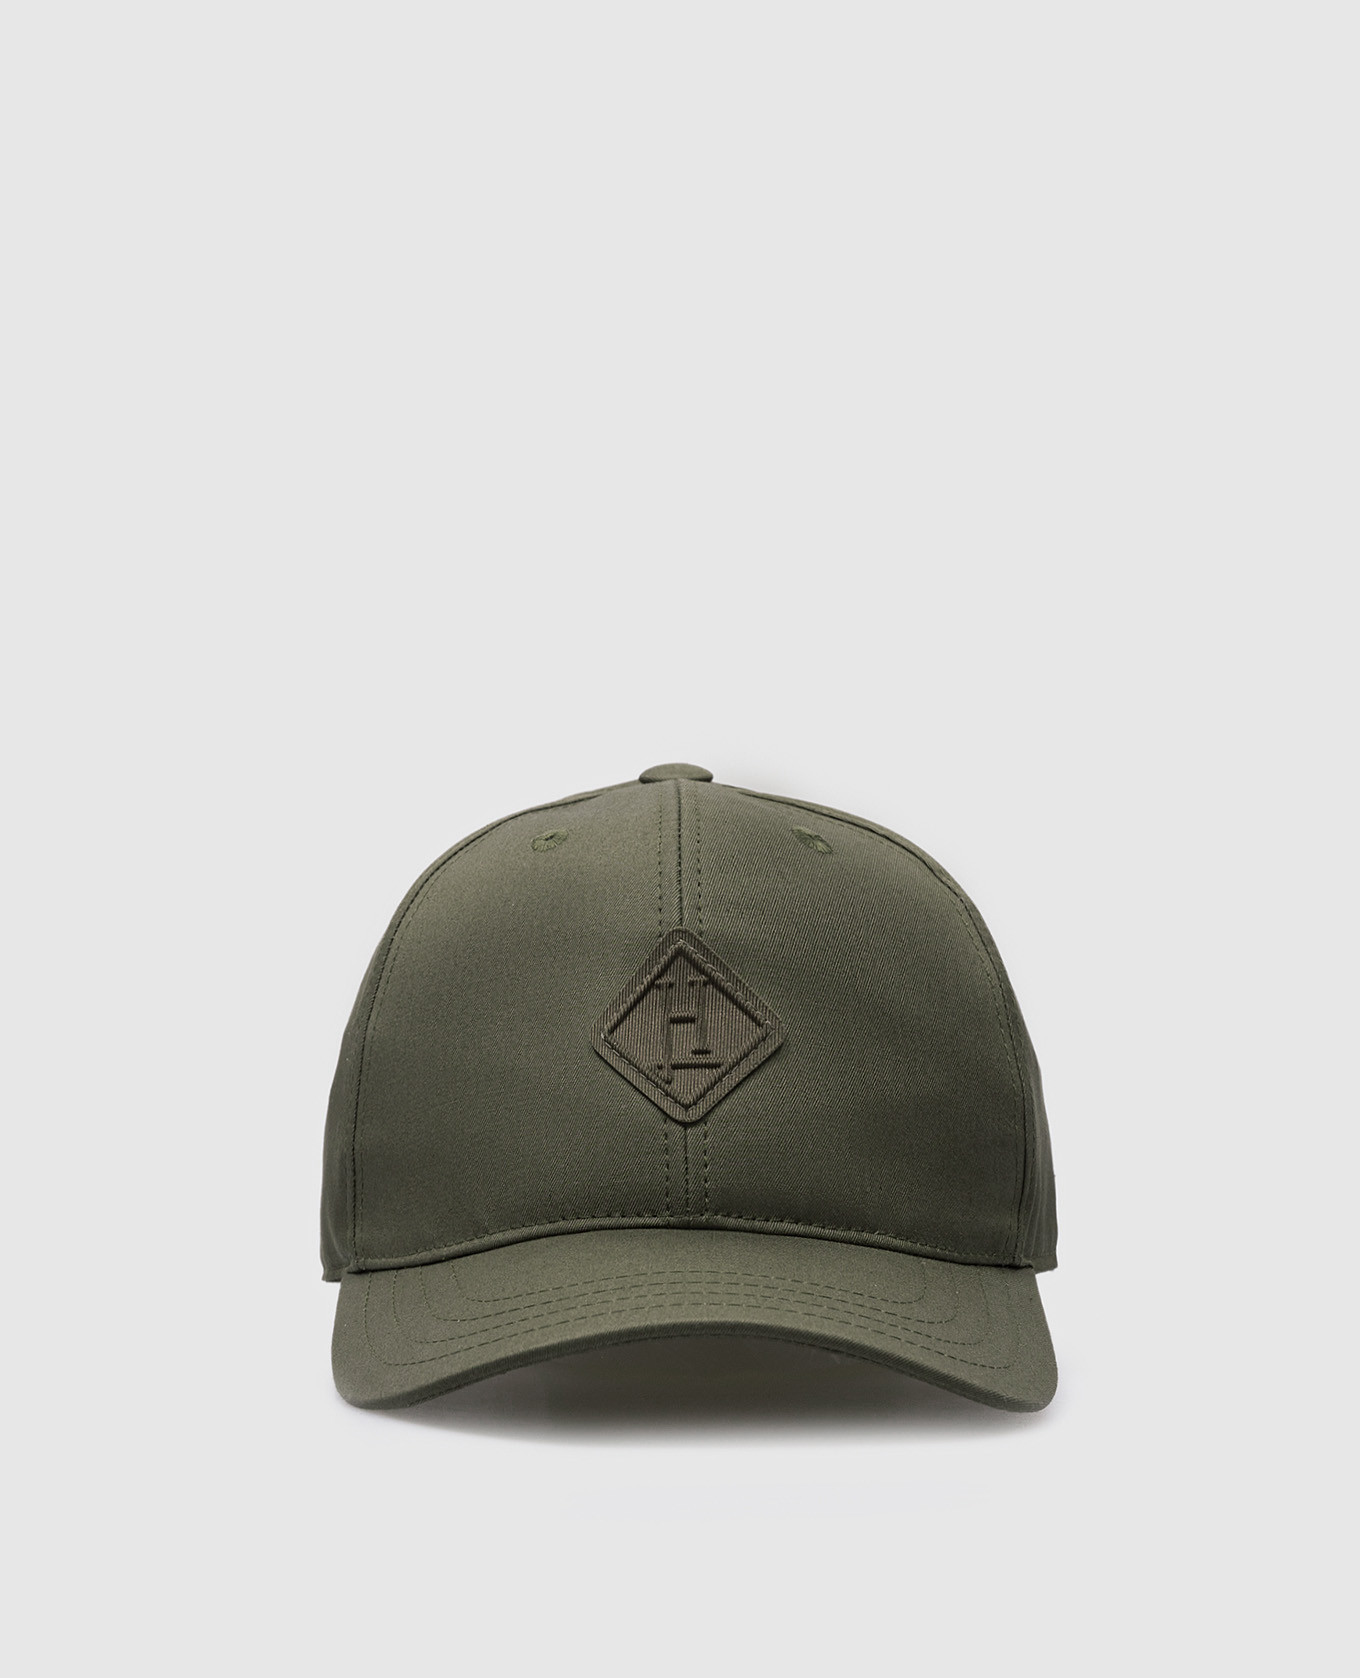 Khaki cap with logo